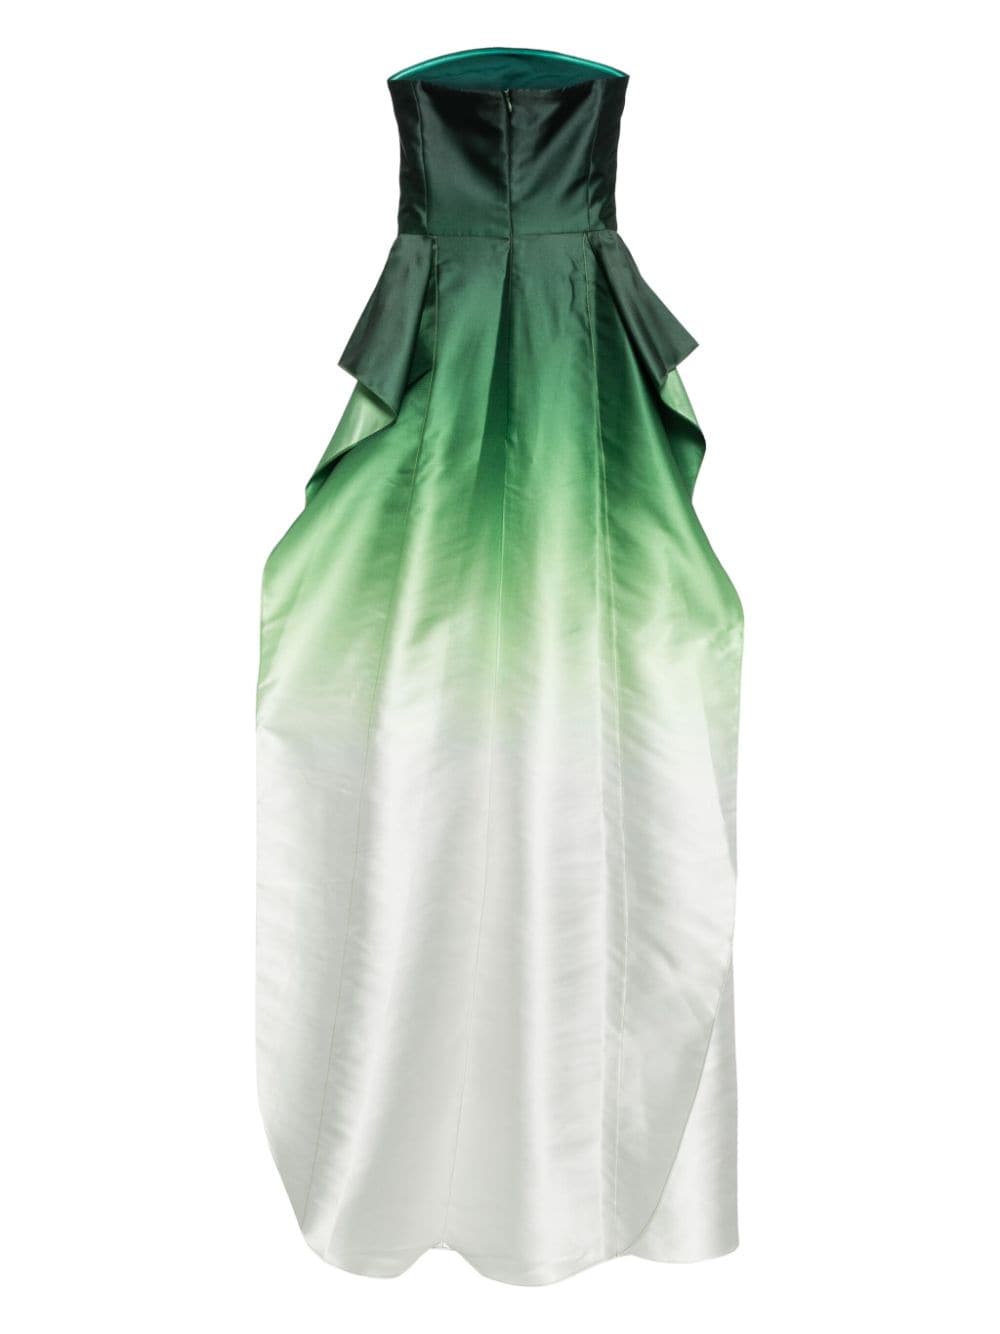 Saiid Kobeisy Strapless jurk - Groen